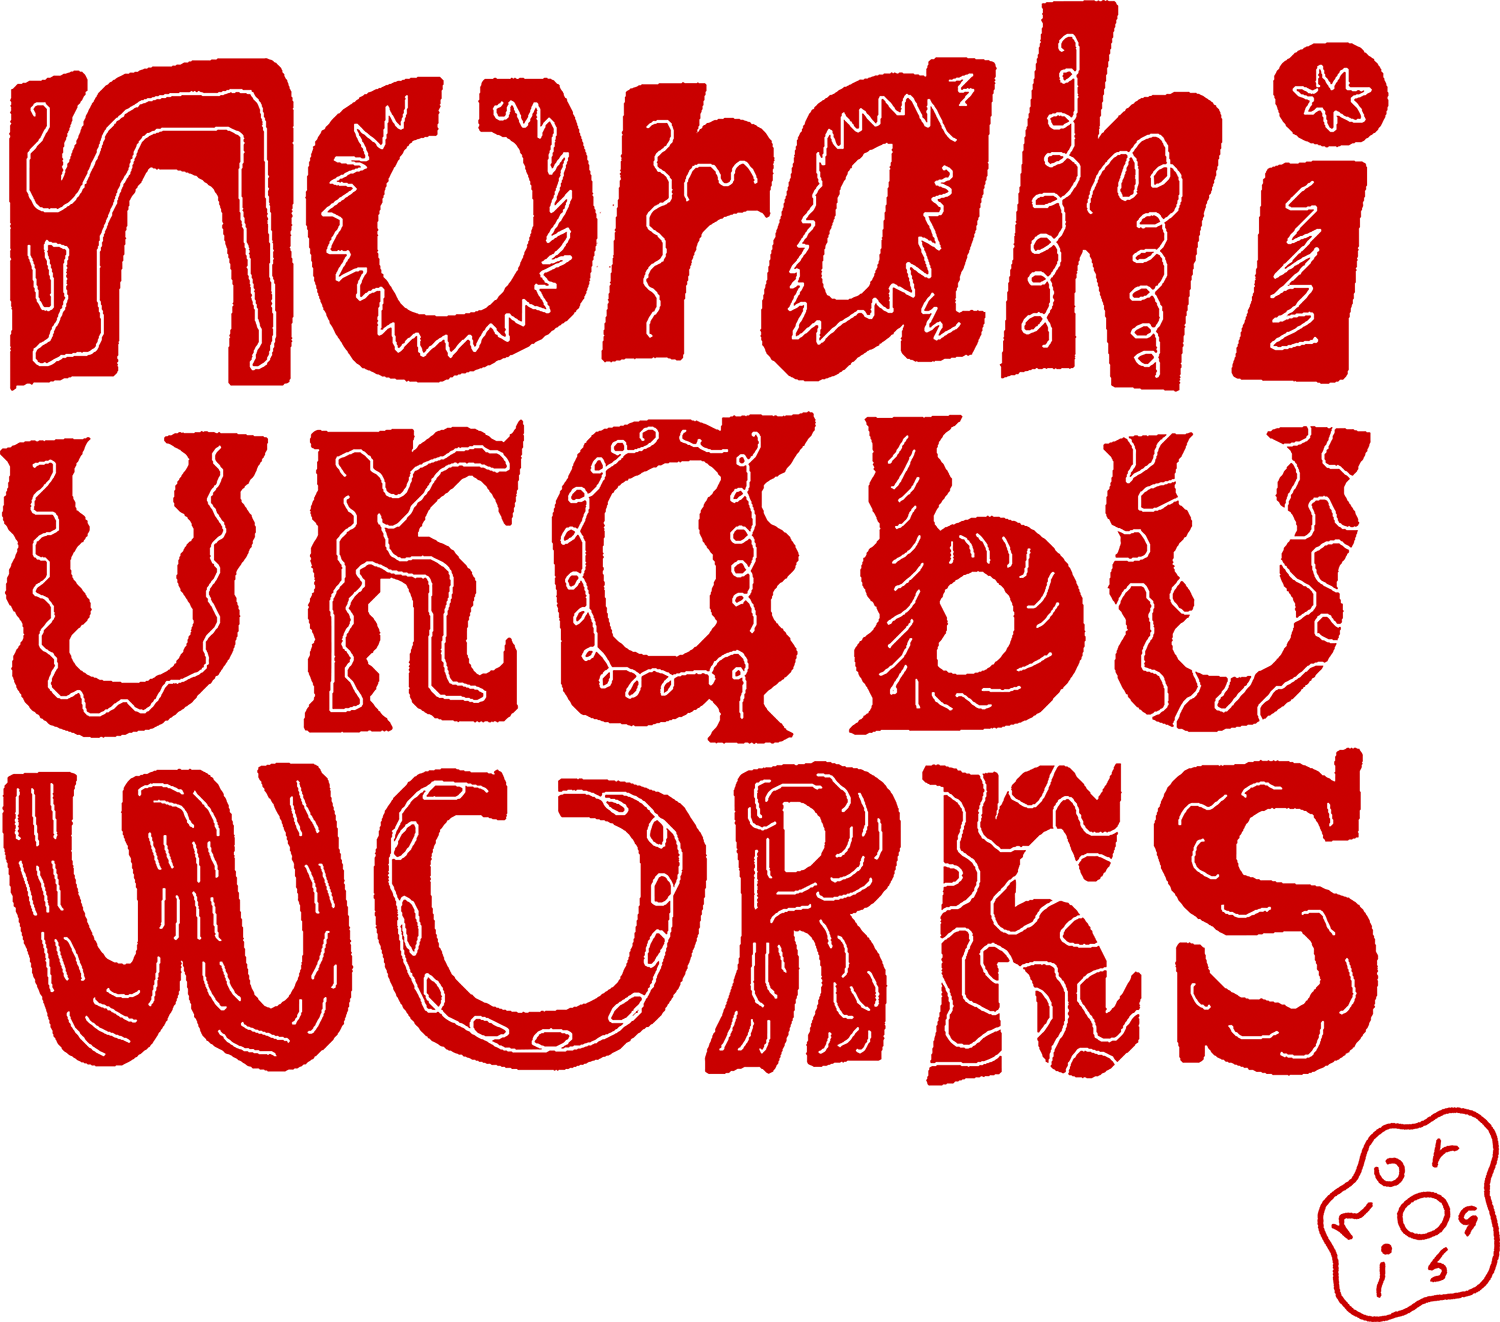 norahi ukabu works